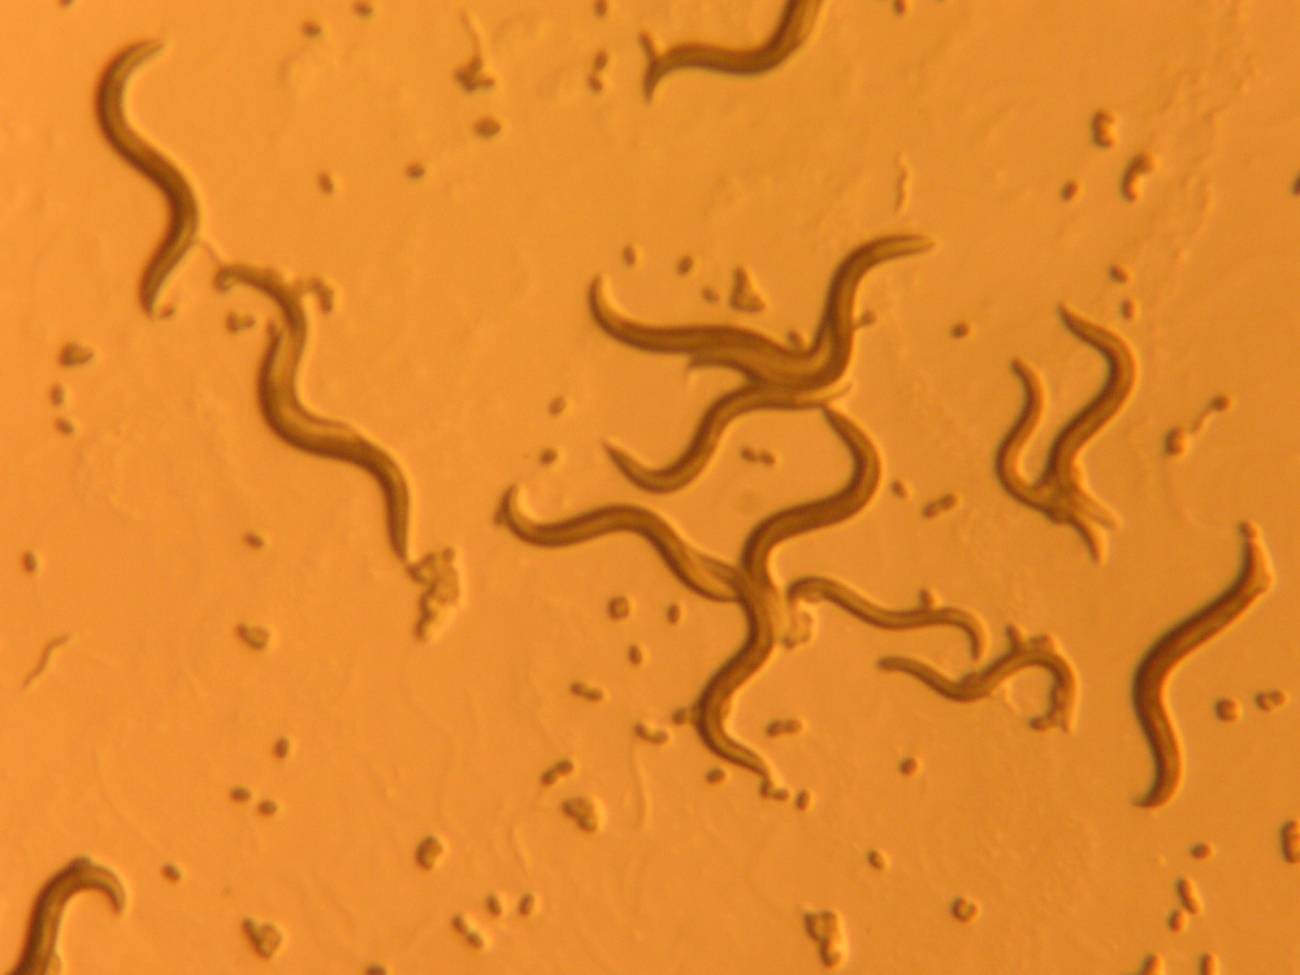 El nematodo C. elegans puede usarse ahora como modelo para entender el funcionamiento de la memoria.